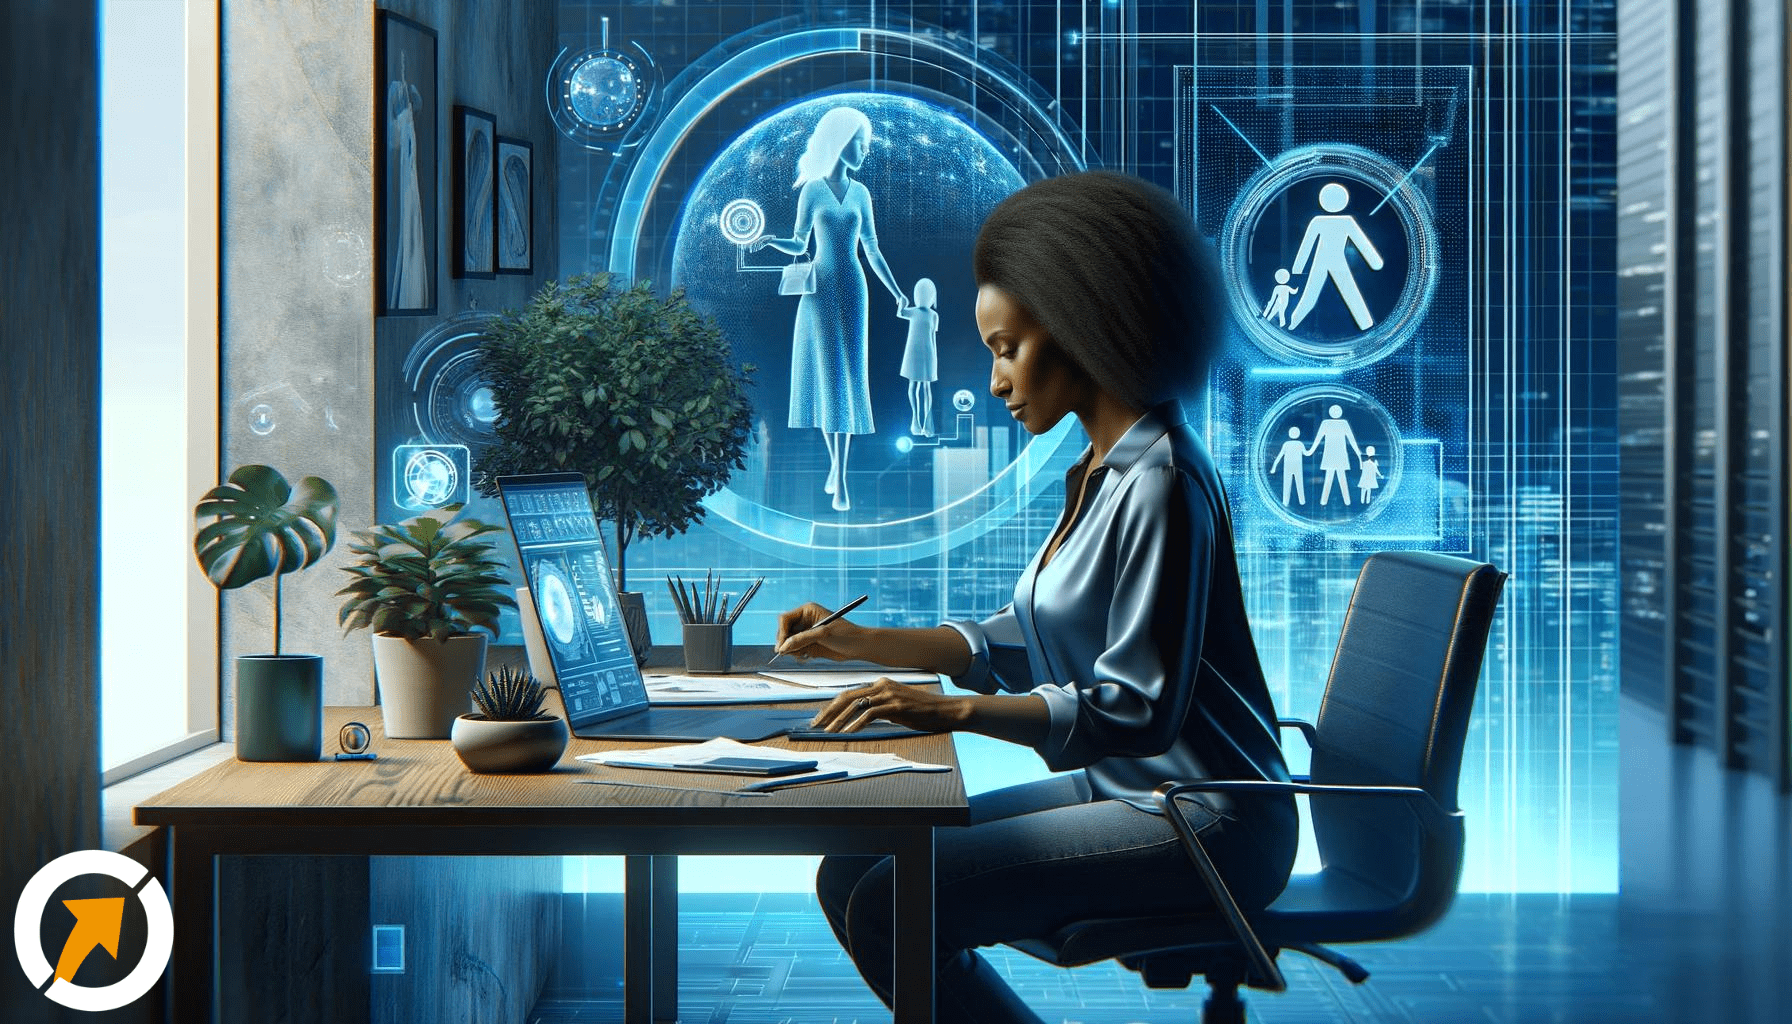 Uma mulher moderna negra trabalha em um escritório moderno com tons de azul realista e futurista, simbolizando a harmonia entre trabalho, família e autocuidado.